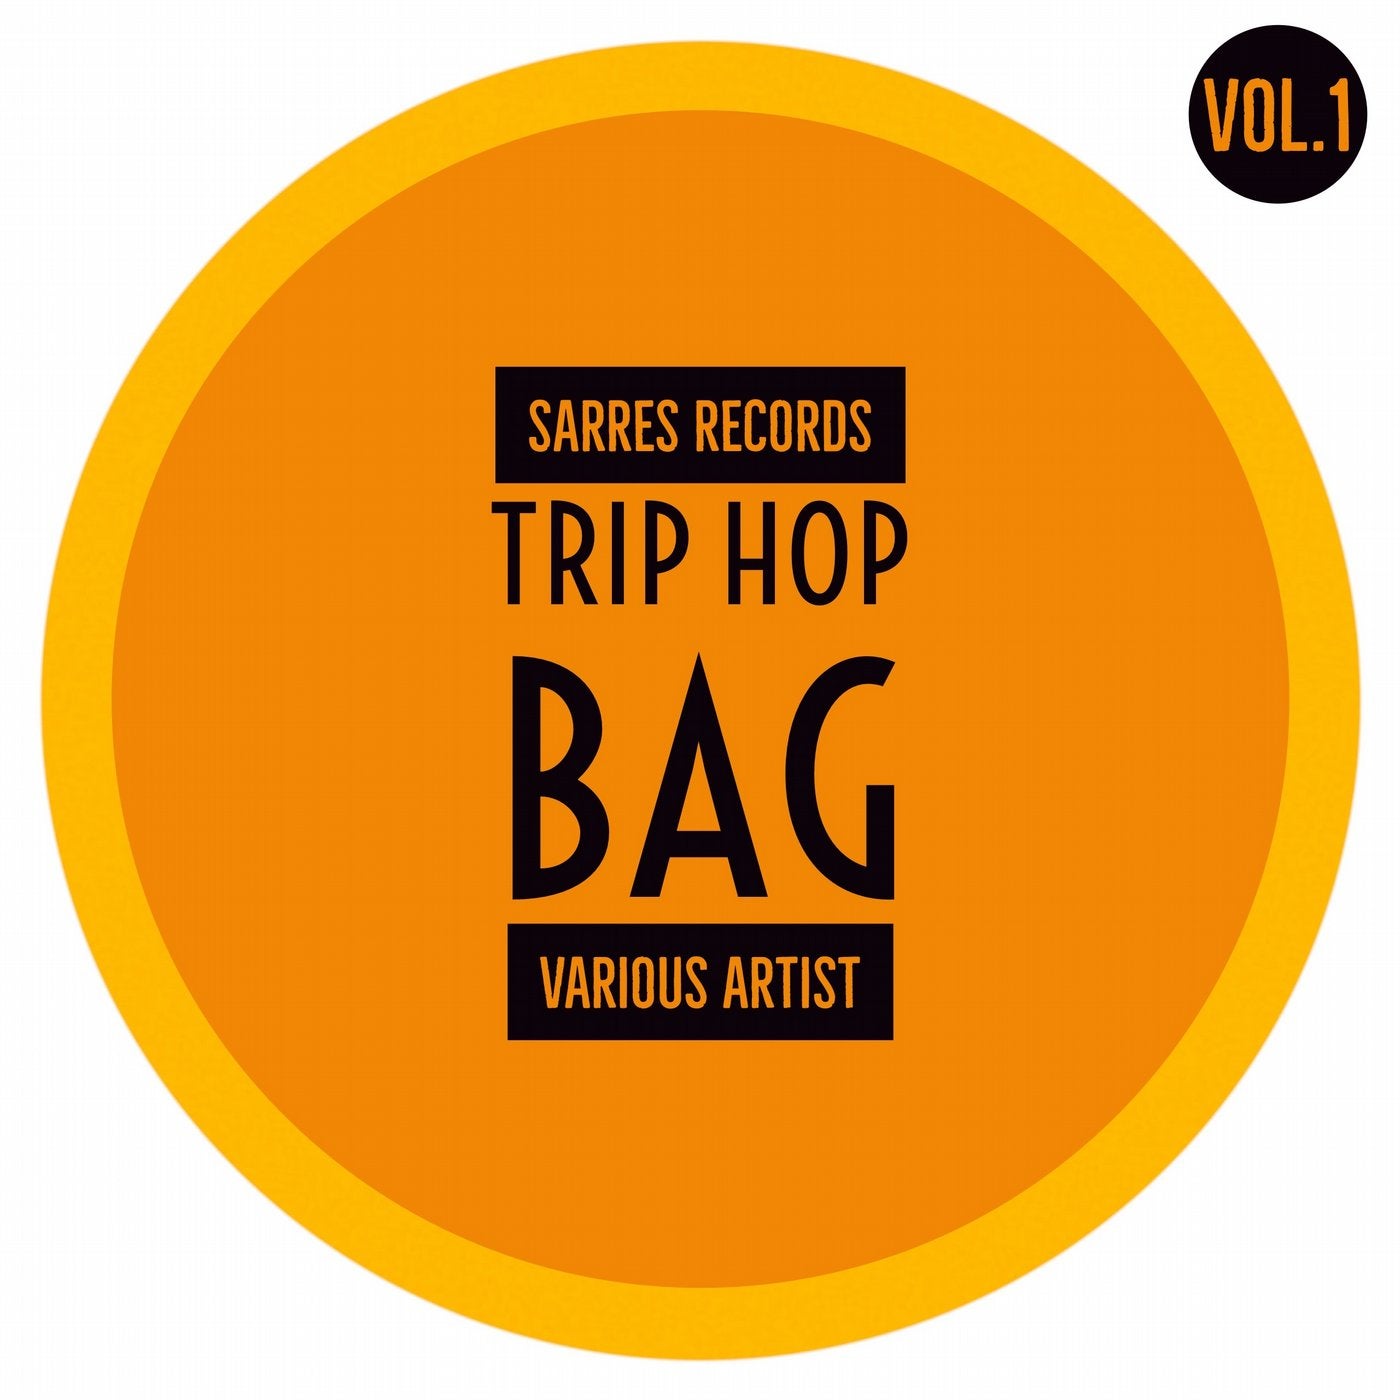 Trip Hop Bag, Vol.1